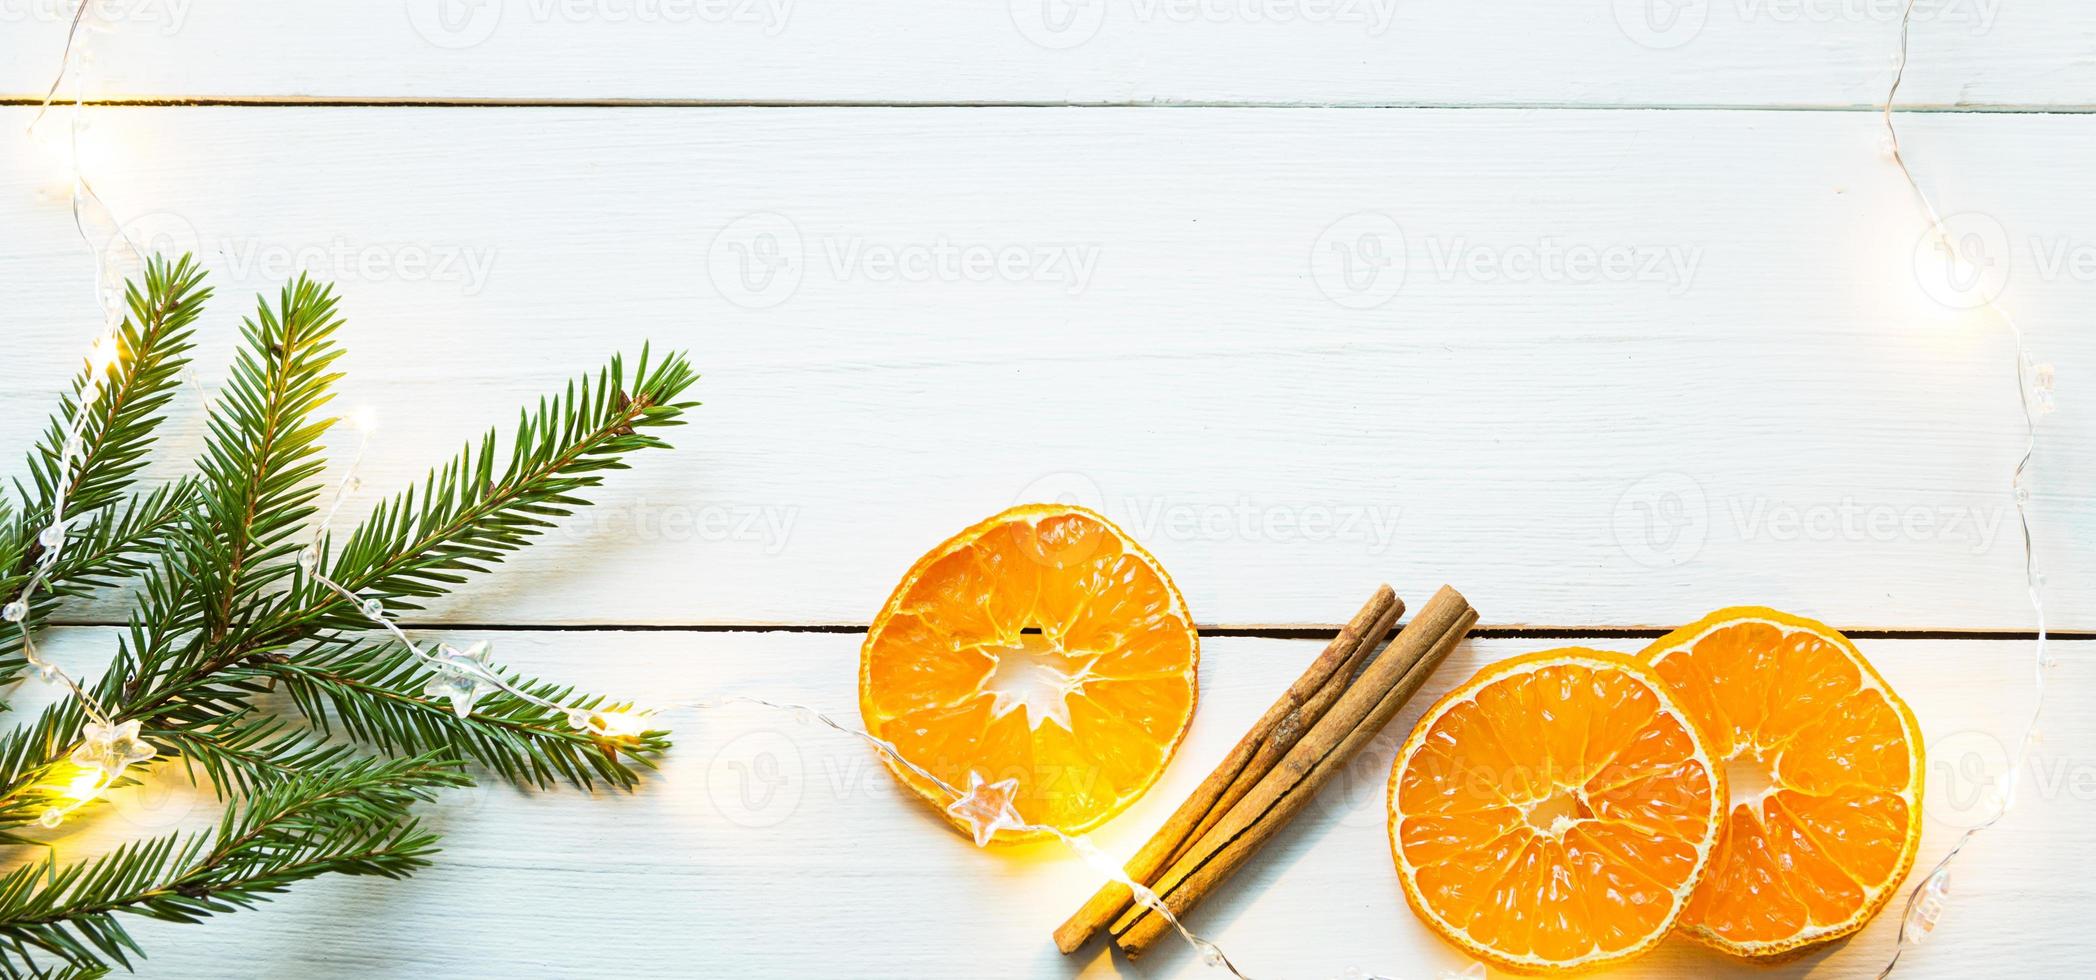 Scheiben getrockneter Orangen, Zimtstangen, Tannenzweige. Lametta und Goldgirlande auf weißem Holzhintergrund. weihnachten, neujahr, urlaub, warme herbst- und winteratmosphäre. kopierraum, flach liegend foto